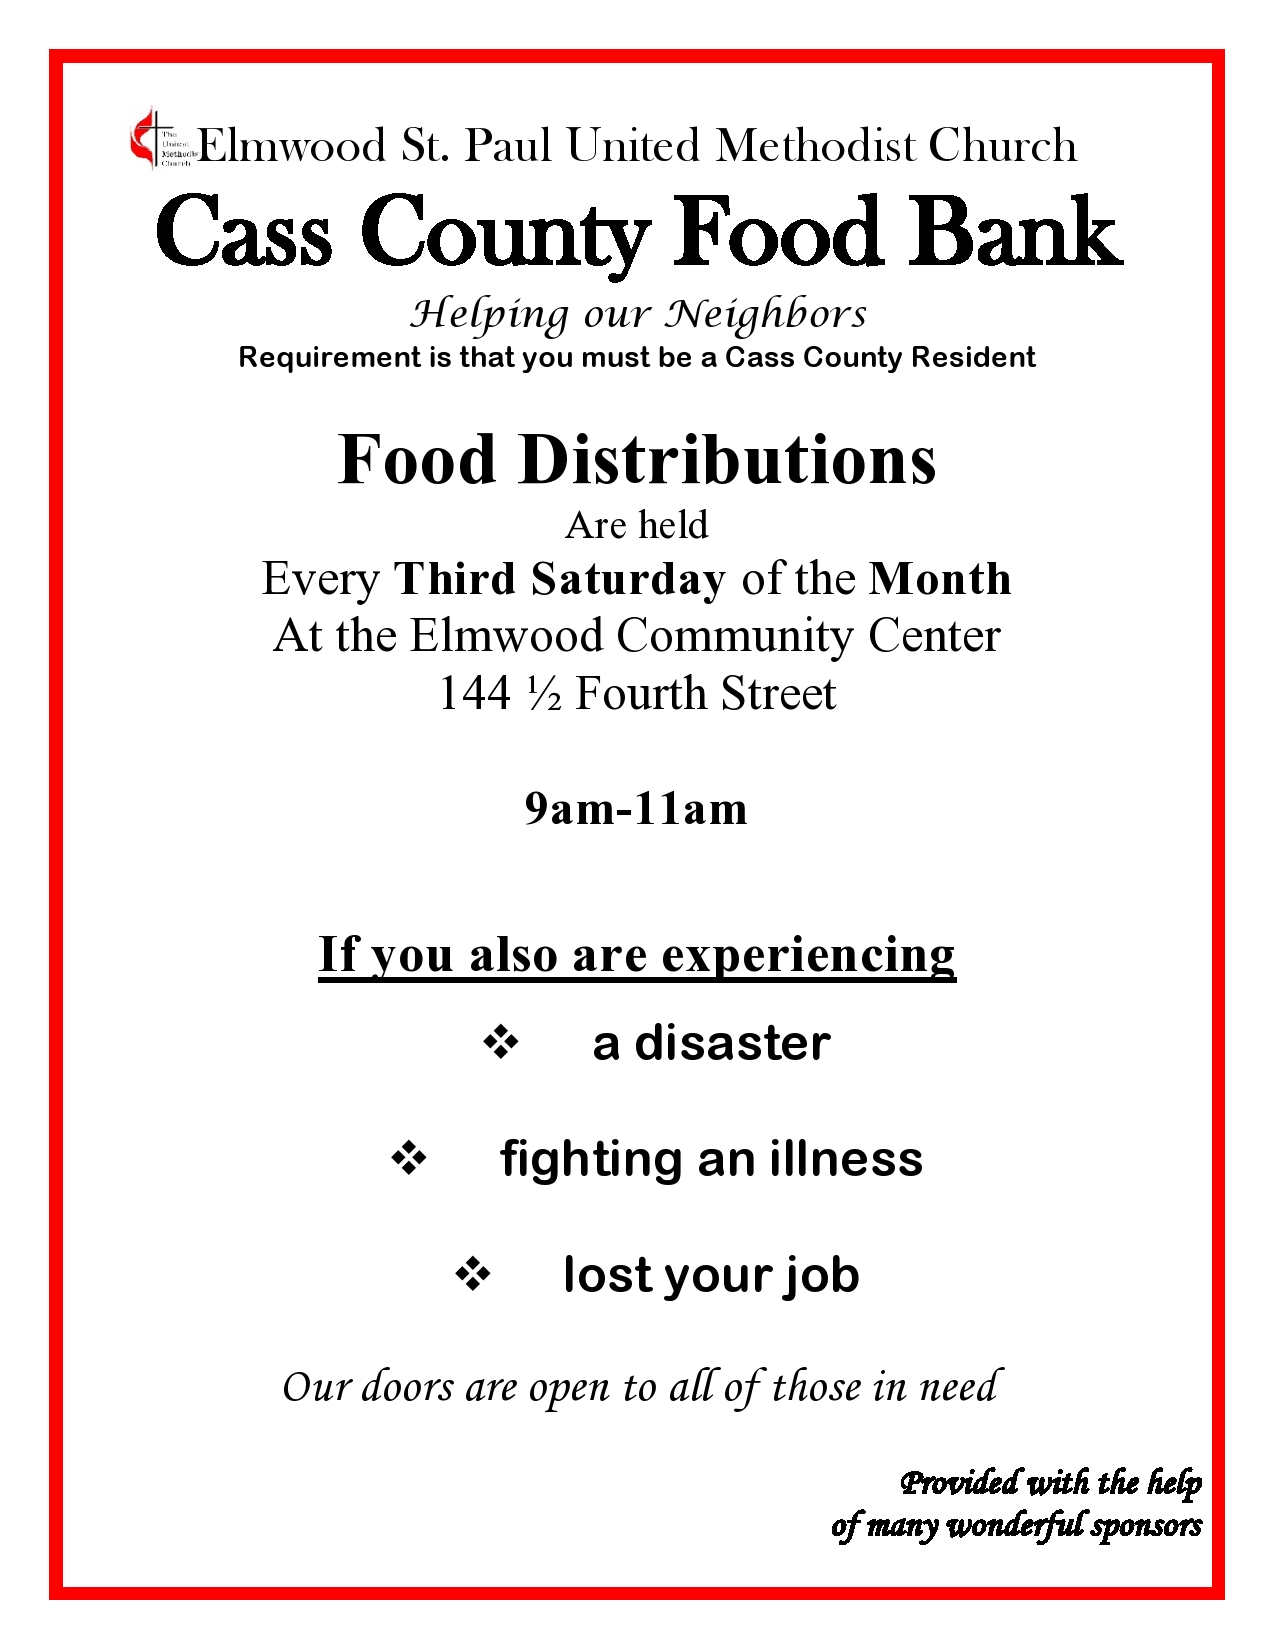 Cass Co Food bank 2019